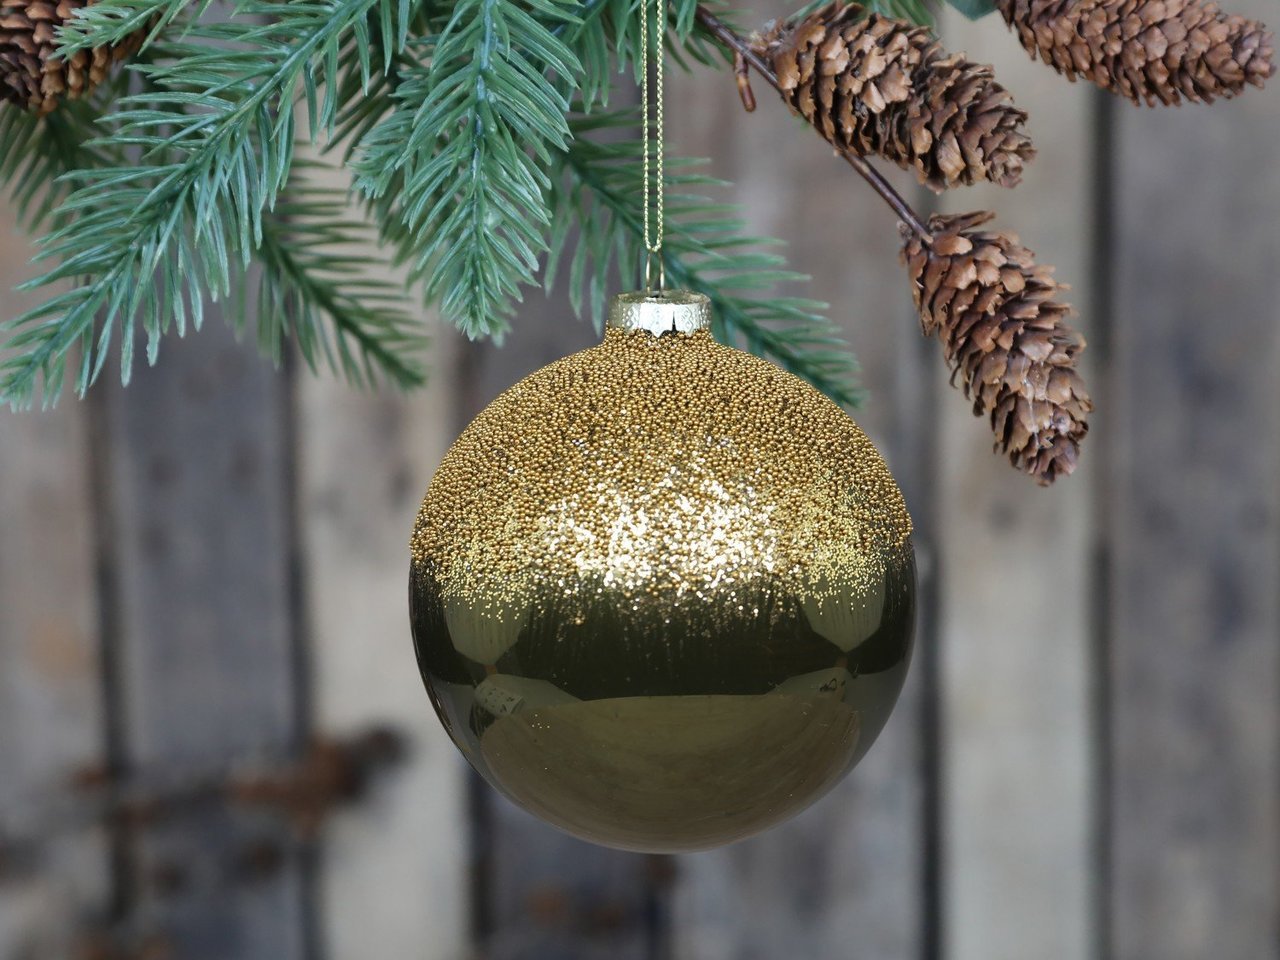 Chic Antique Weihnachtskugel mit goldener Perlenoberseite Preview Image